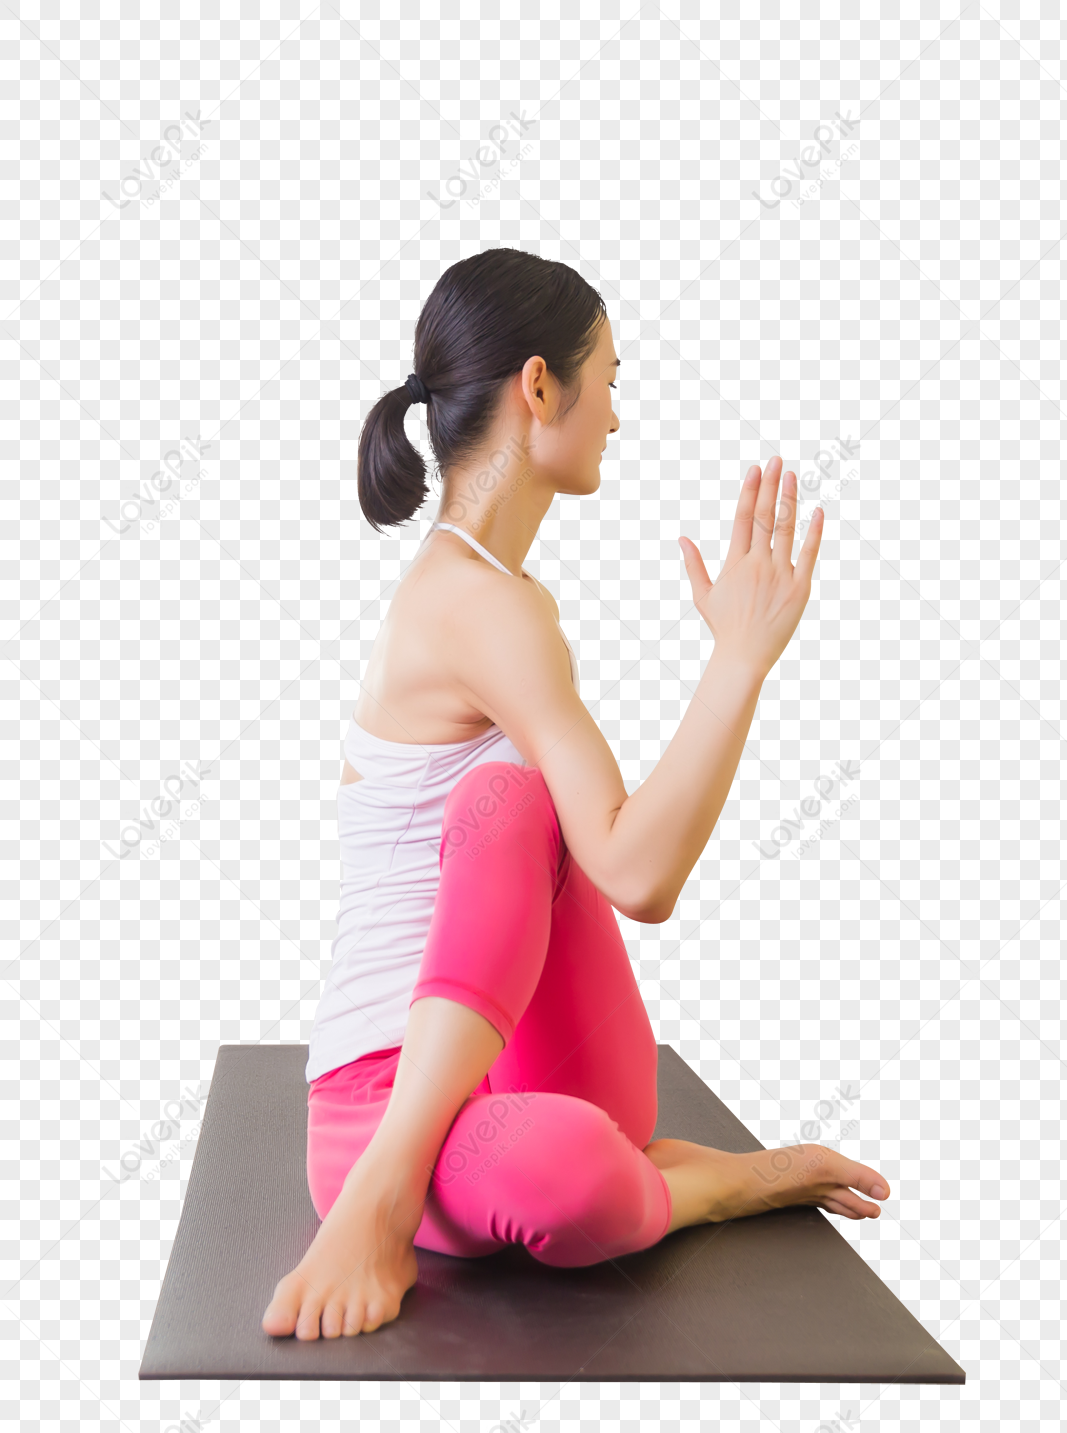 Hình ảnh Phụ Nữ Tập Yoga PNG Miễn Phí Tải Về - Lovepik